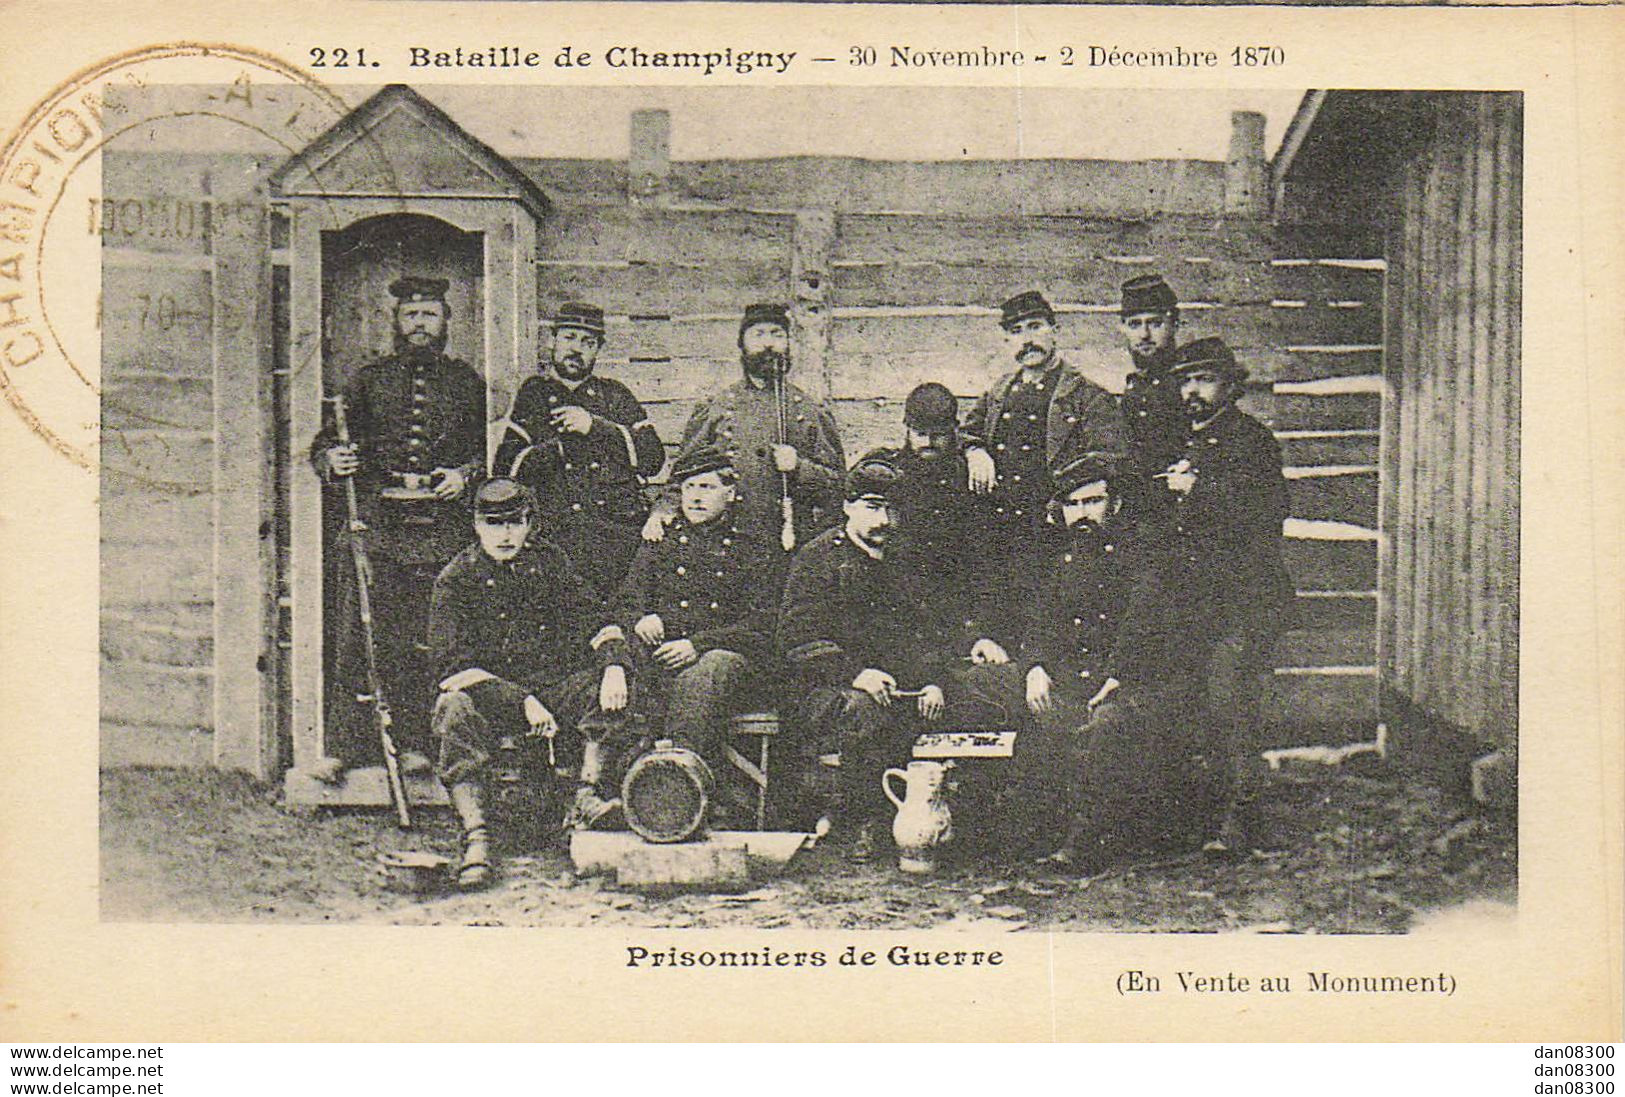 94 BATAILLE DE CHAMPIGNY 30 NOVEMBRE 2 DECEMBRE 1870 PRISONNIERS DE GUERRE - Otras Guerras